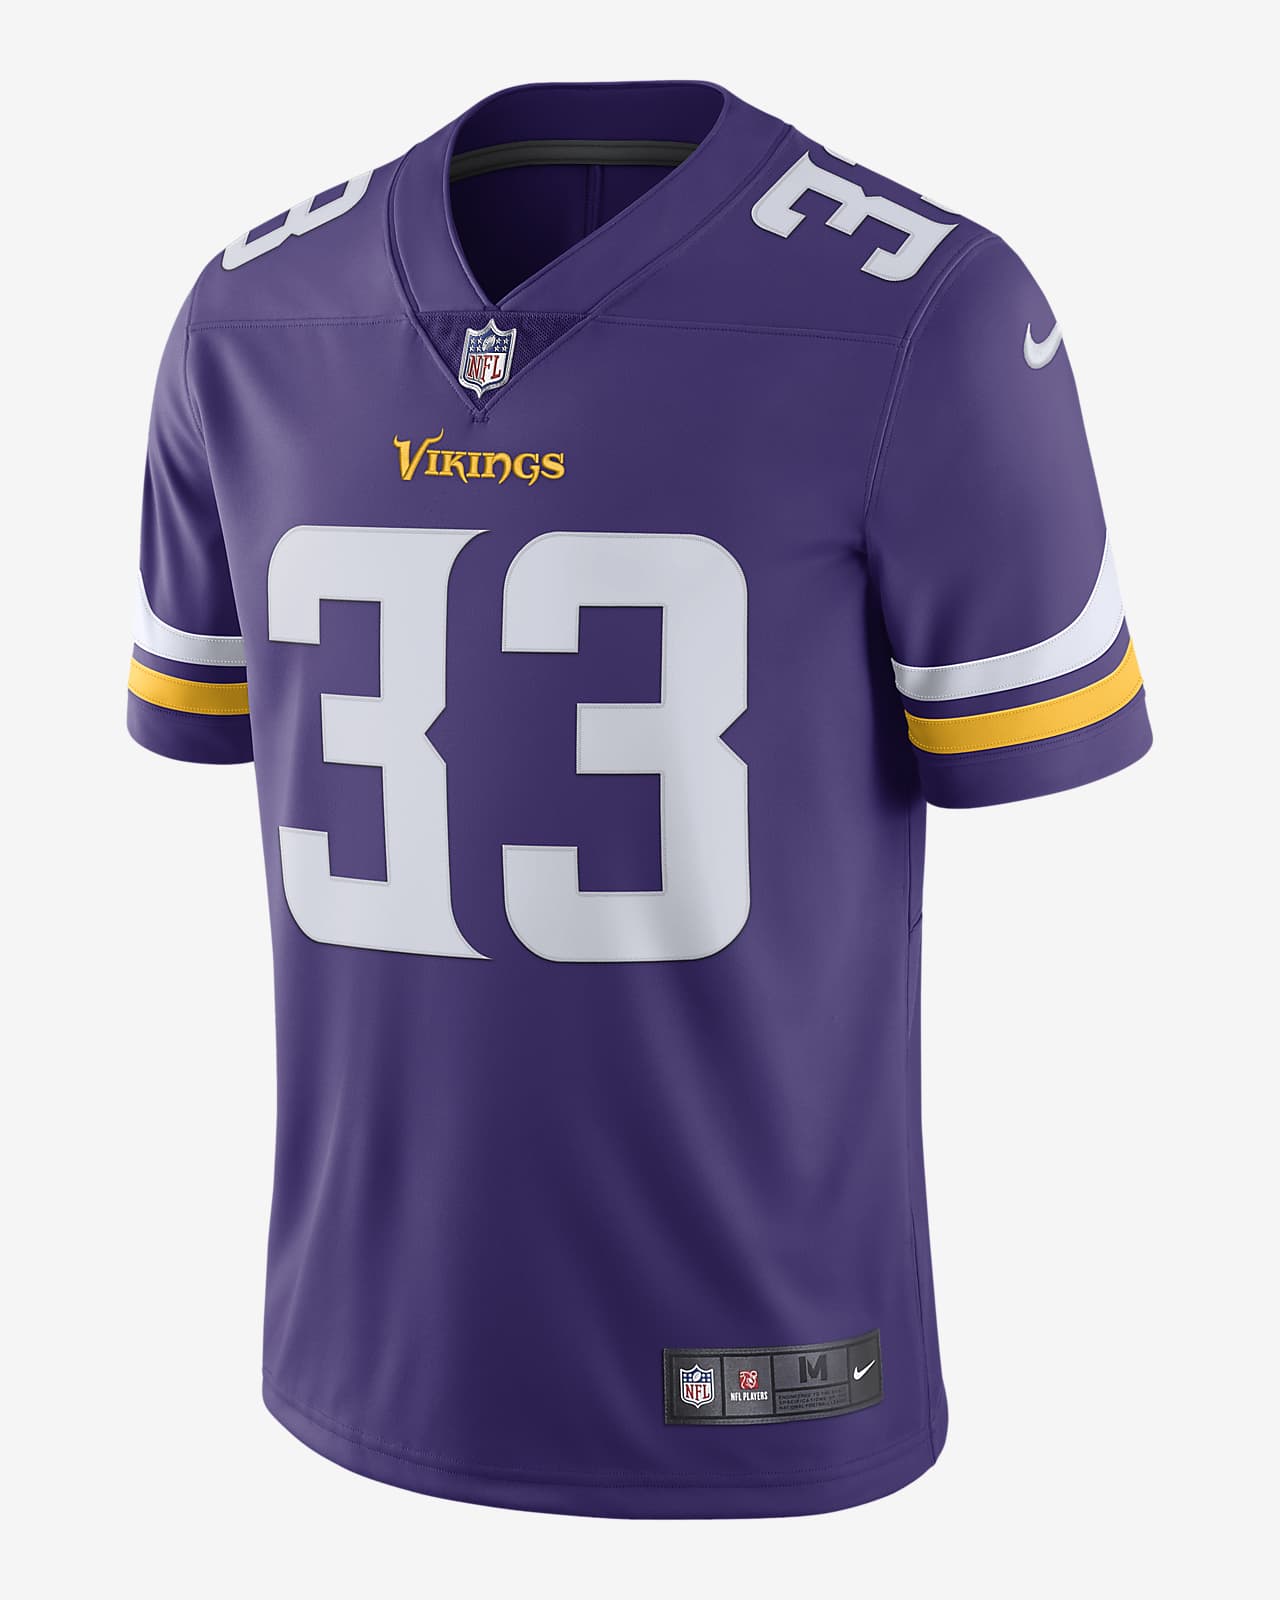 î€€NFLî€ Minnesota Vikings Vapor Untouchable (Dalvin Cook) Men\'s Limited Football î€€Jerseyî€. Nike.com